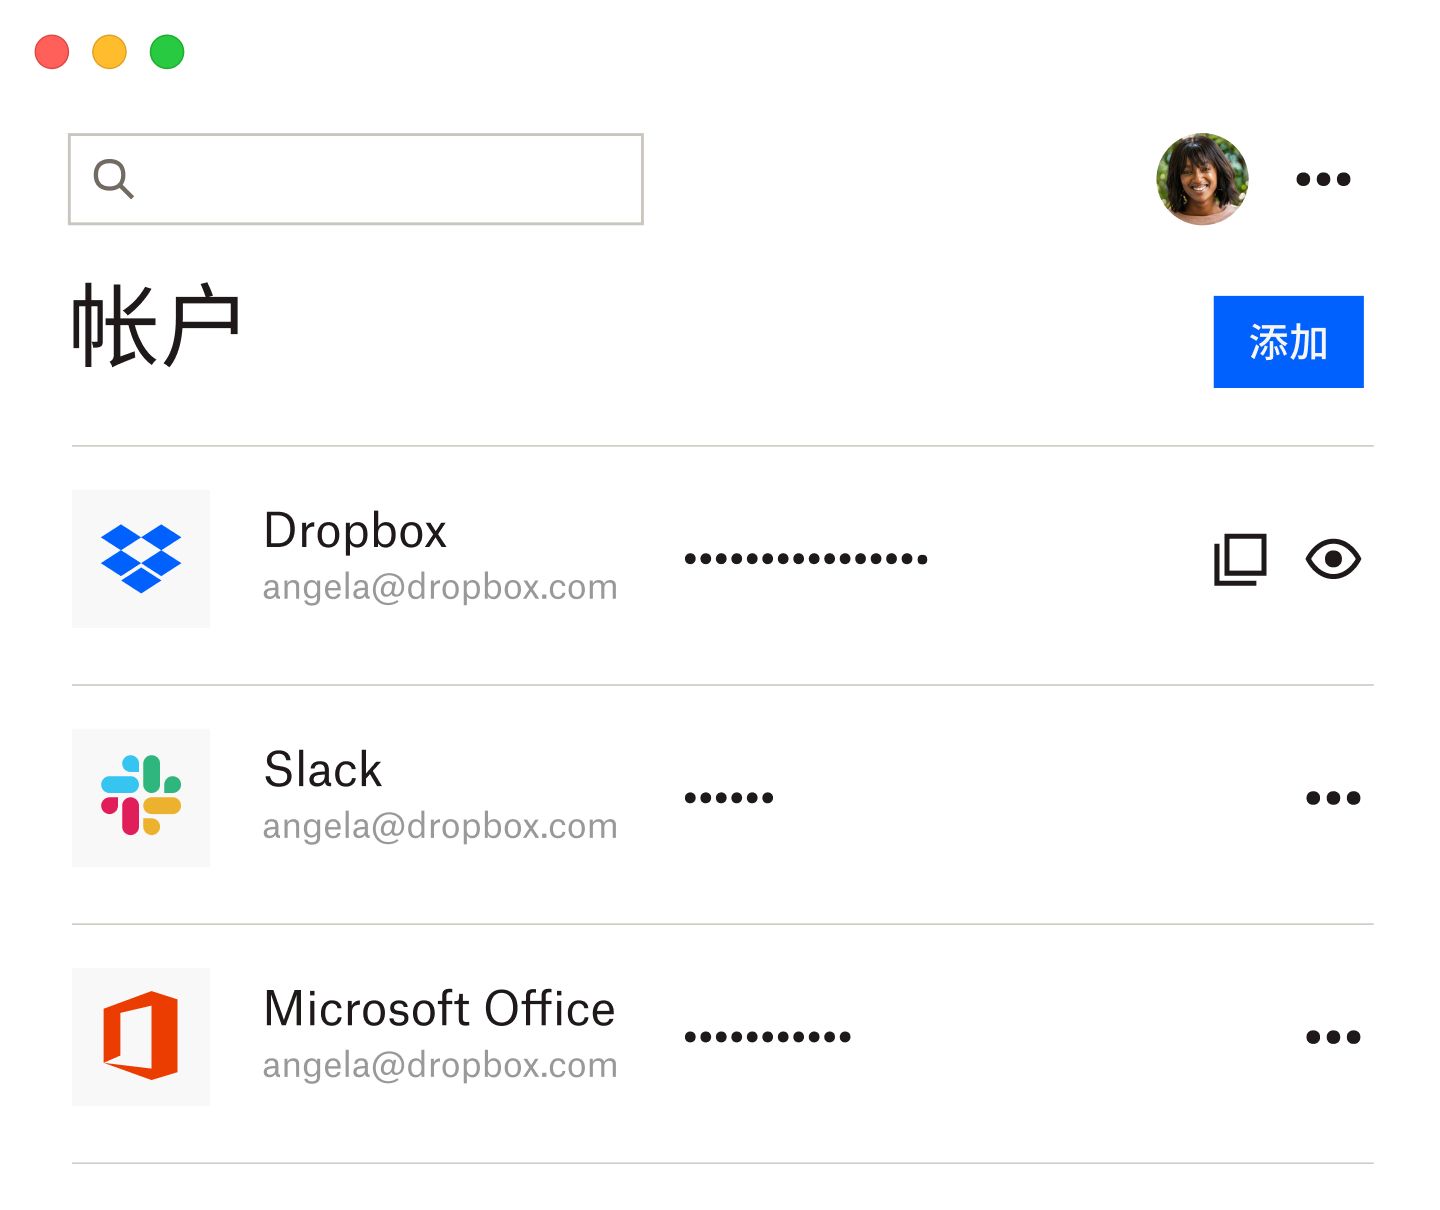 Dropbox 密码管理器以列表形式列出已保存的 Dropbox、Slack 和 Microsoft Office 密码